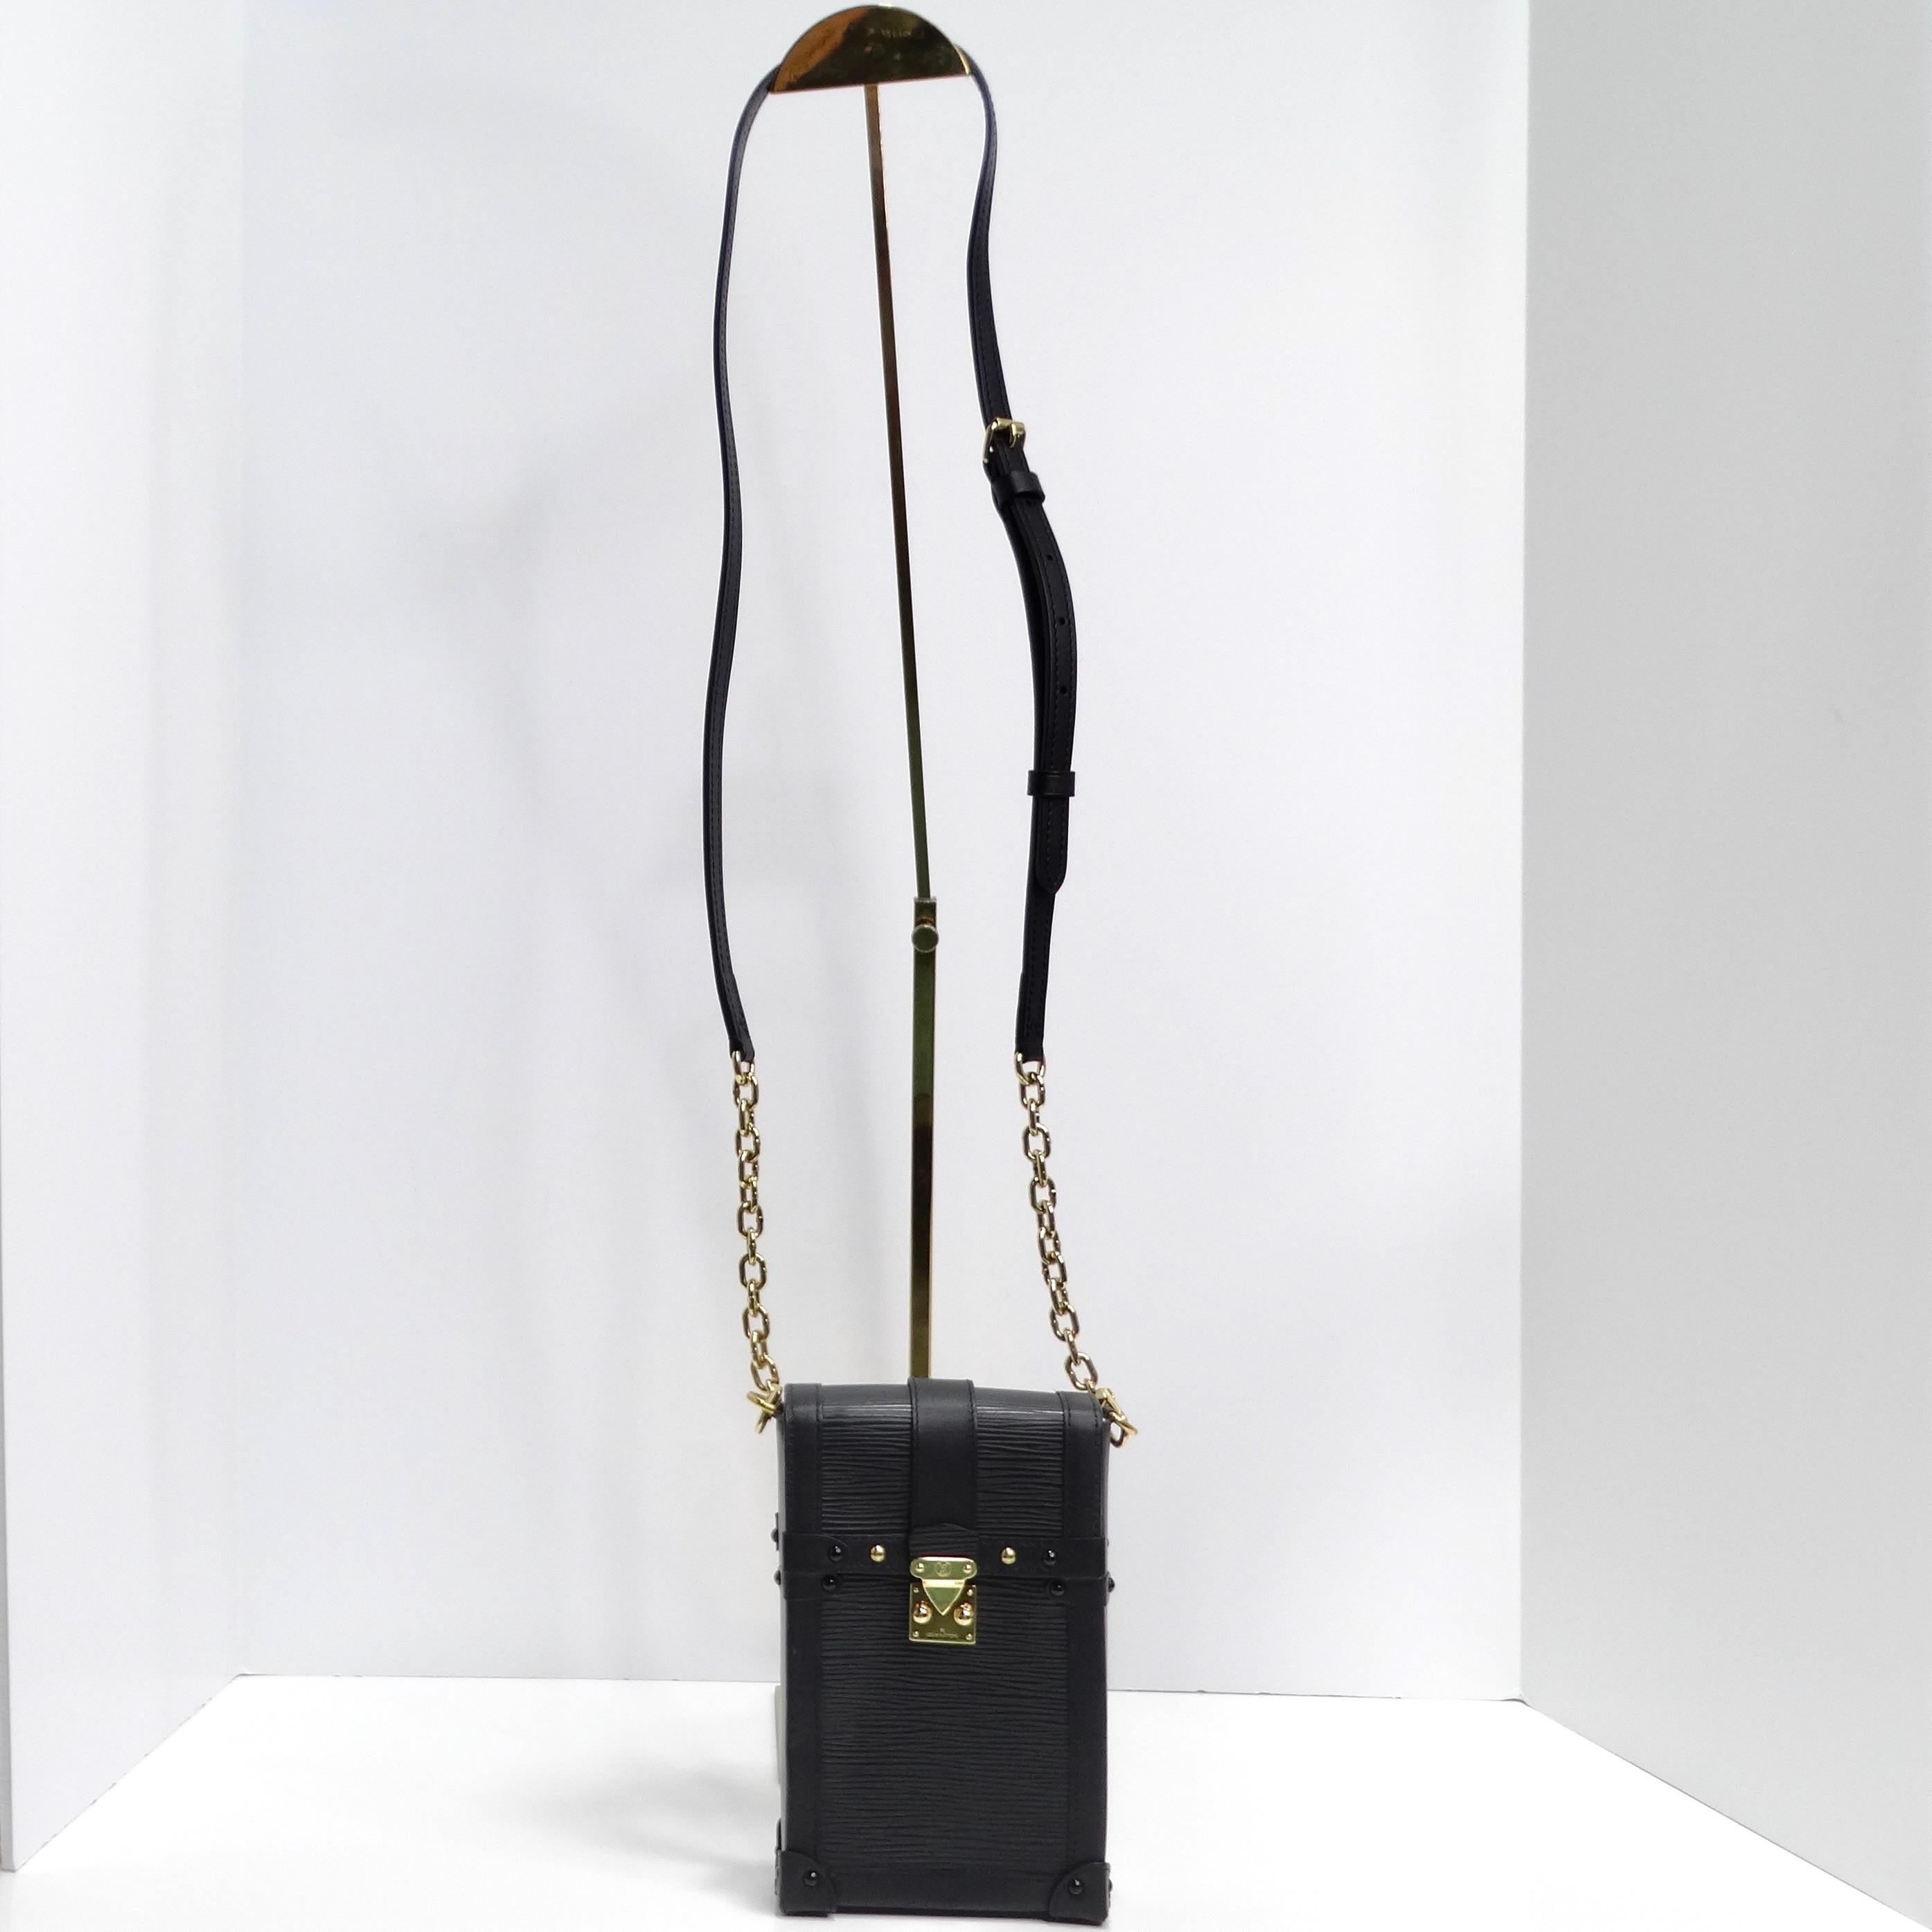 Die Louis Vuitton Epi Noir Pochette Vertical Trunk ist eine bemerkenswerte Verschmelzung von Luxus und Funktionalität. Diese Mini-Tasche aus exquisitem schwarzem Epi-Leder strahlt Raffinesse und Eleganz aus.

Der Koffer verfügt über einen